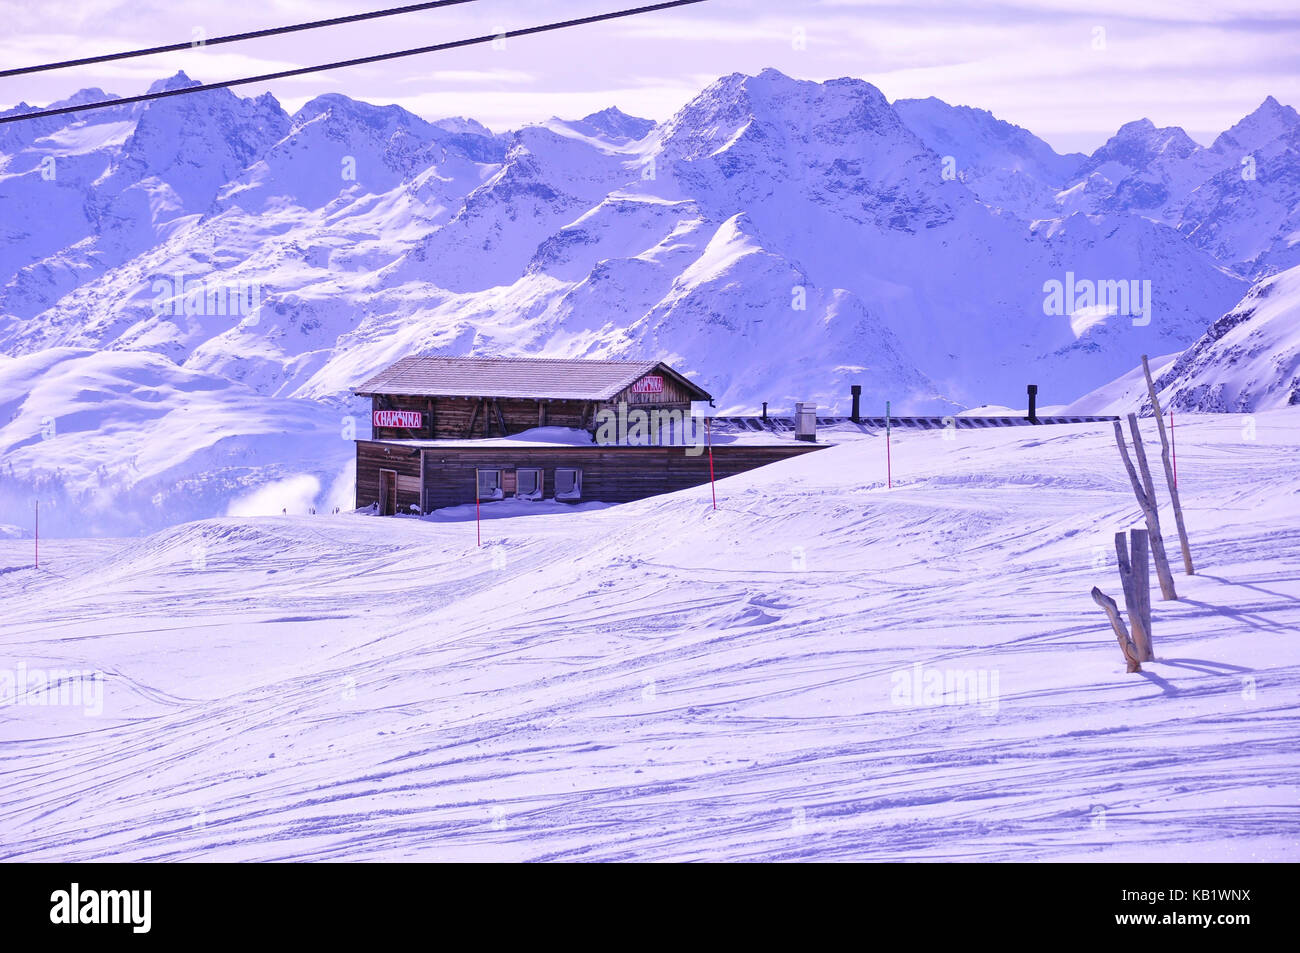 La Suisse, canton des Grisons, l'Engadine, st. MORITZ, corviglia, piste de ski, refuge de montagne, paysage de montagne, l'hiver, Banque D'Images